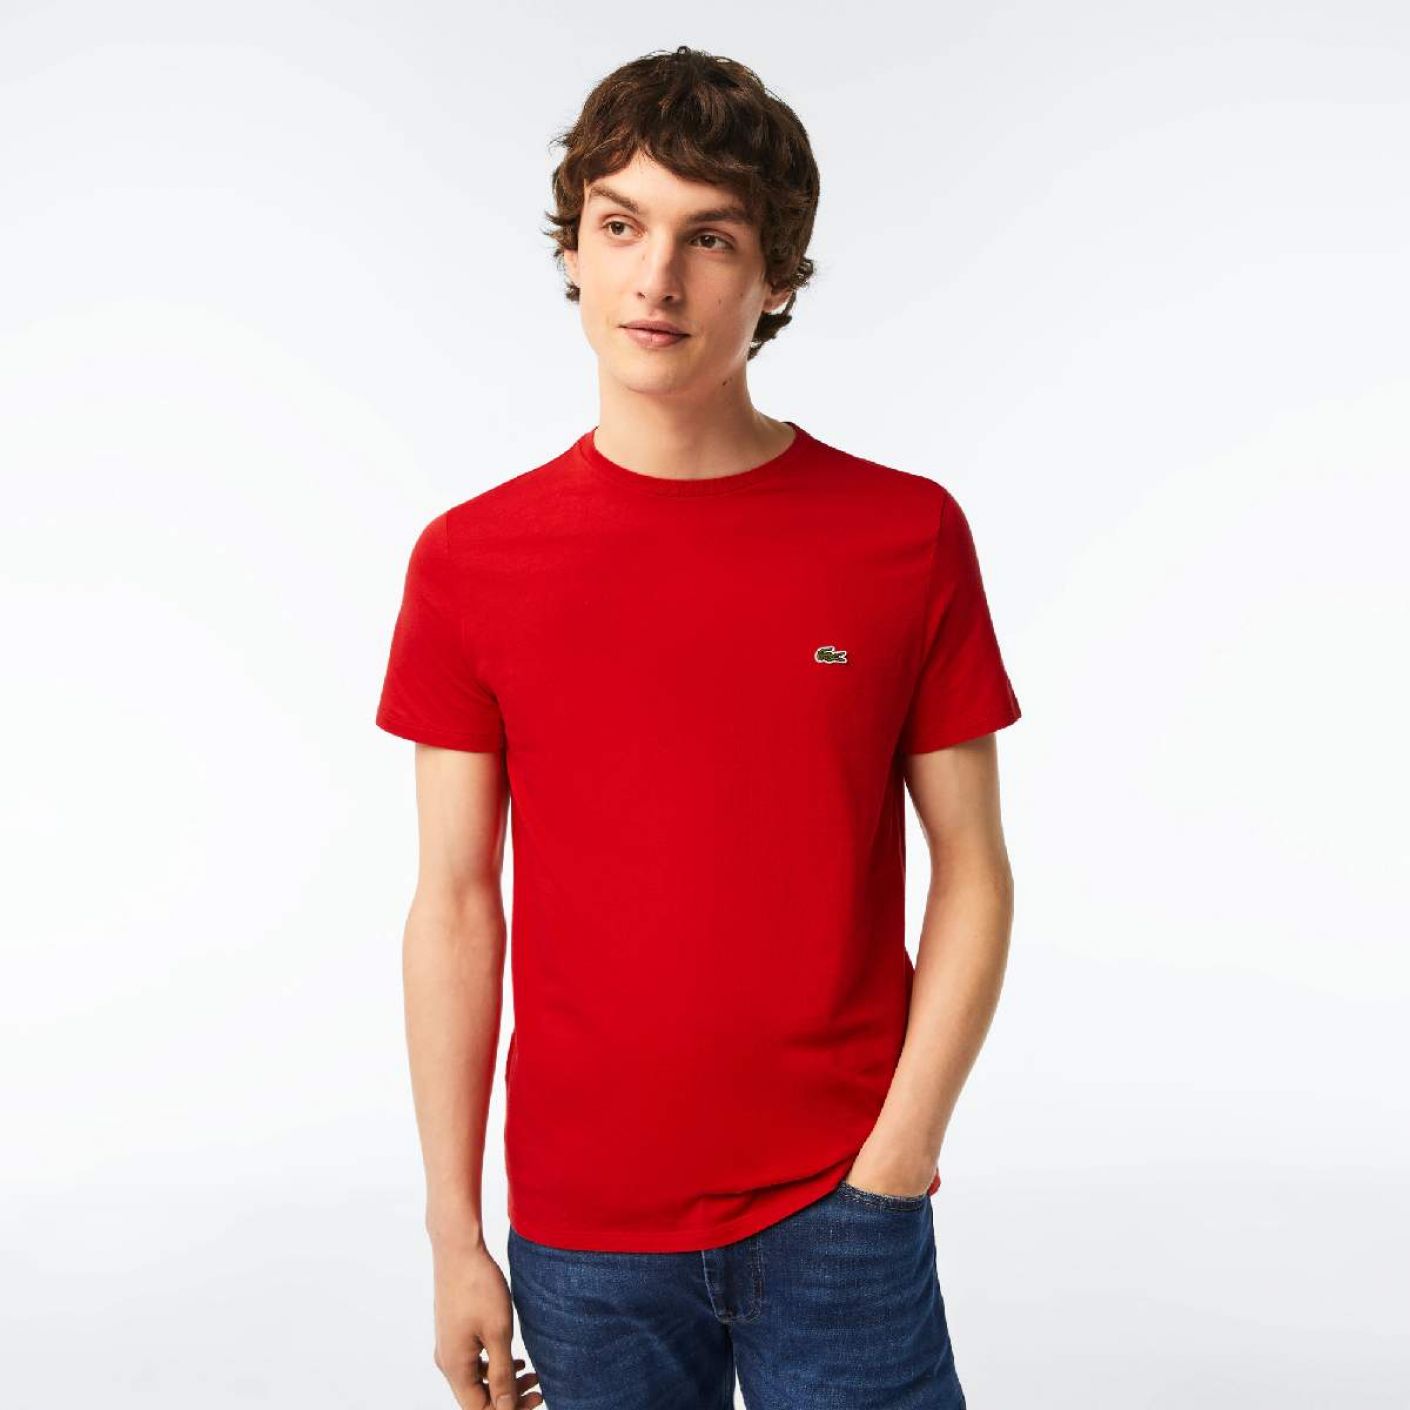 Lacoste T-shirt a Girocollo in Cotone Pima Rossa